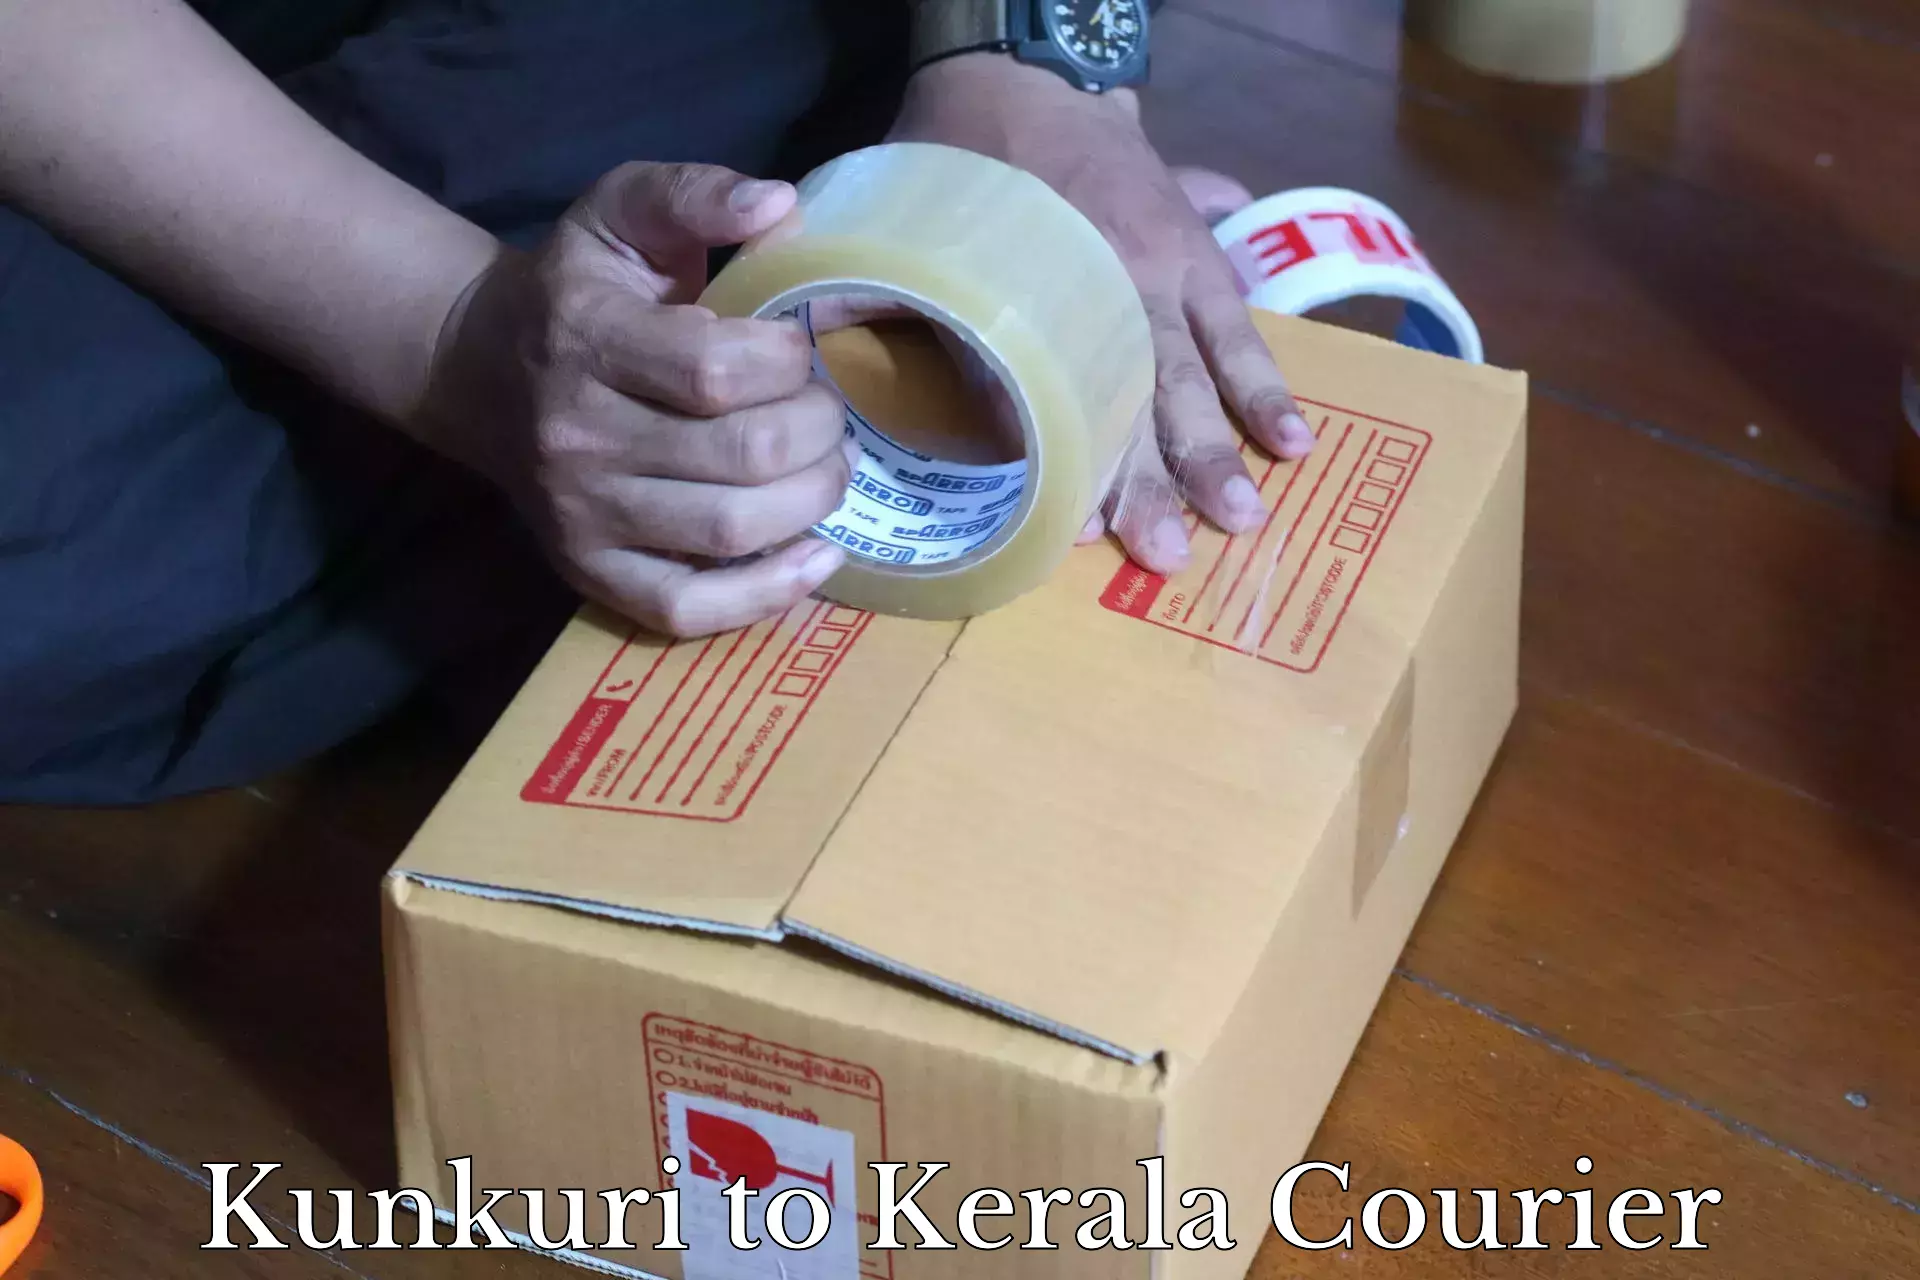 High-speed parcel service in Kunkuri to Kerala